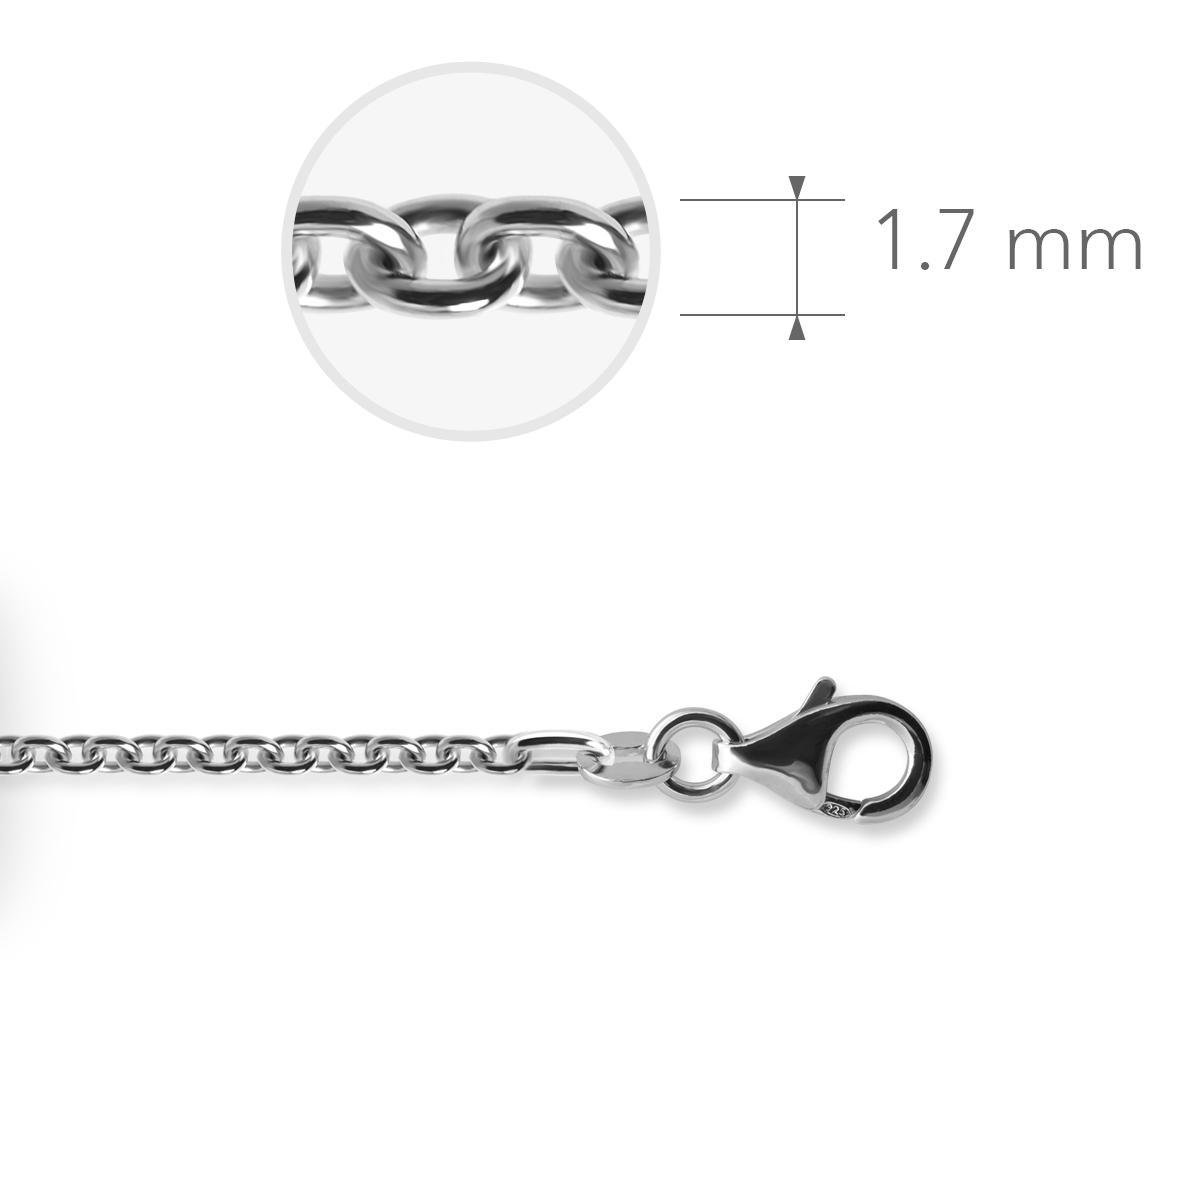 Jewels Inc. - Anker Ketting met Karabijnsluiting - 1.7mm Dik - Lengte 42cm - Gerhodineerd Zilver 925